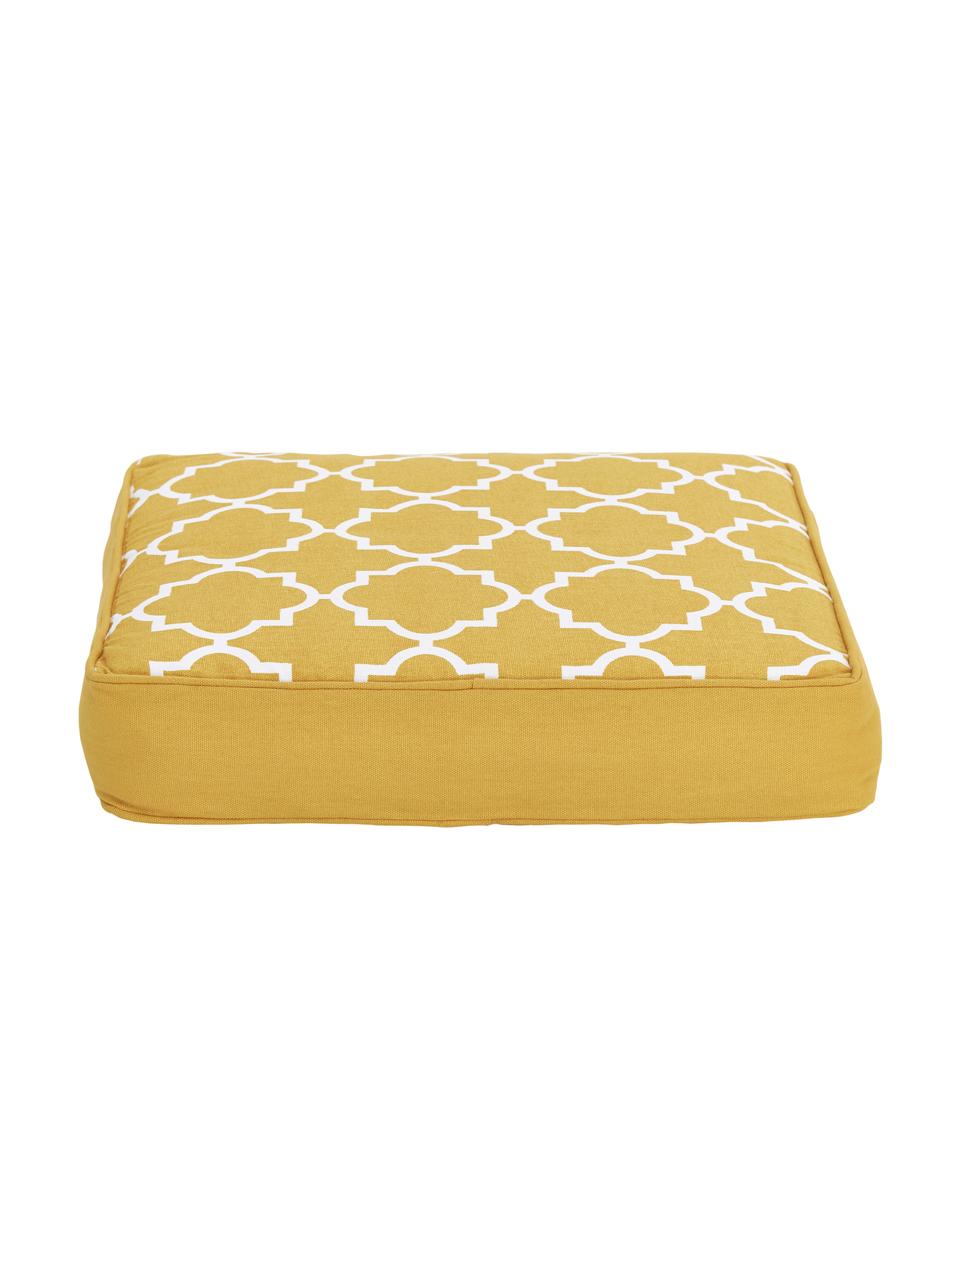 Cuscino sedia alto giallo/bianco Lana, Rivestimento: 100% cotone, Giallo, Larg. 40 x Lung. 40 cm